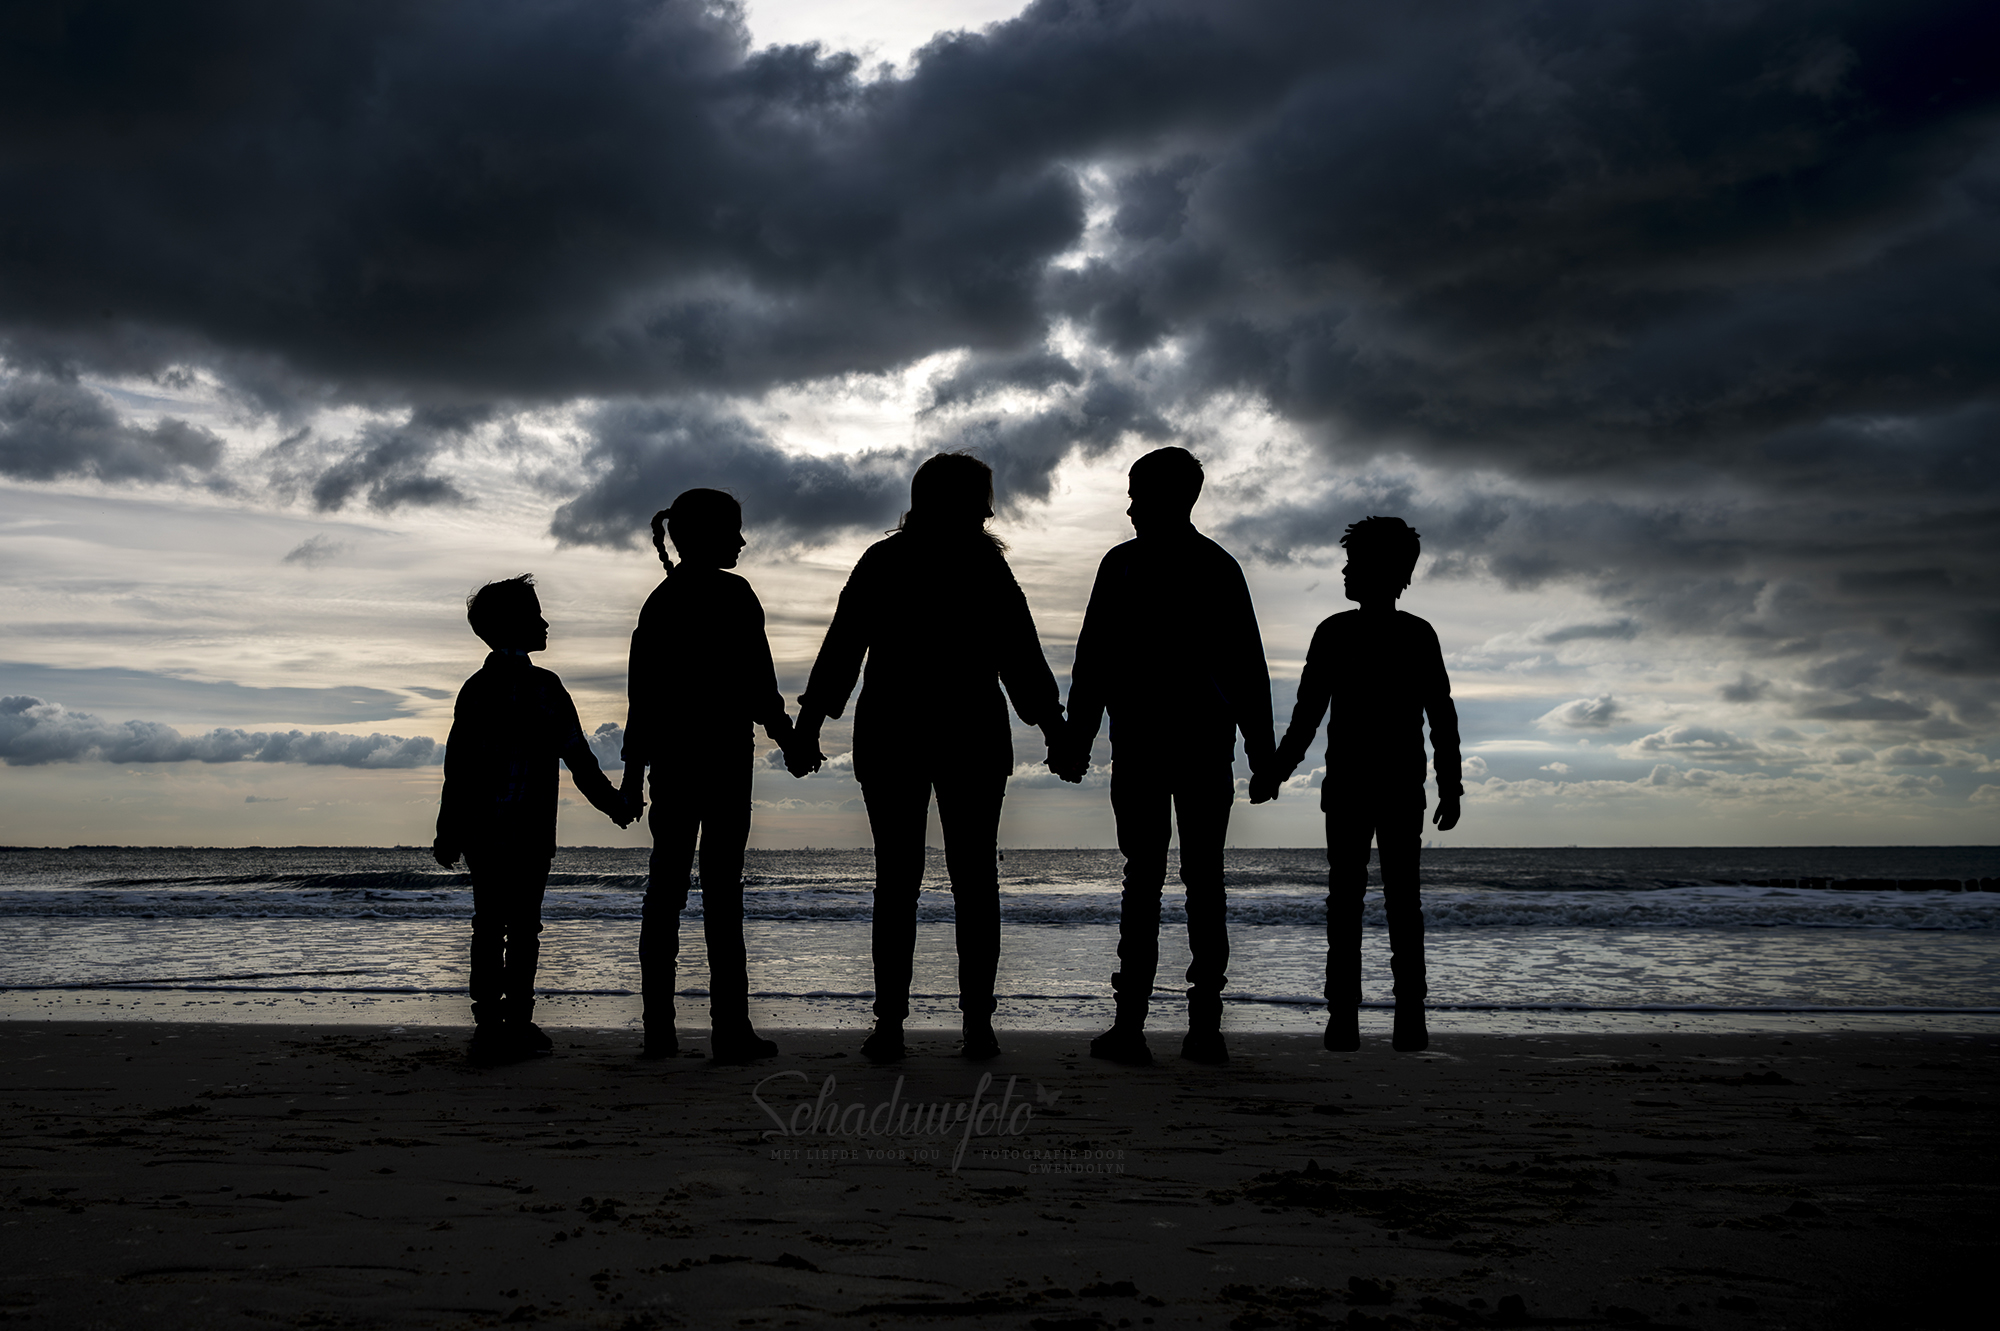 Schaduwfoto in samenwerking met Gwendolyn Pieters uit Zeeland overleden zoontje getekend door Dasja Dijkstra fotoreportage aan de Zeeuwse kust Silhouet foto